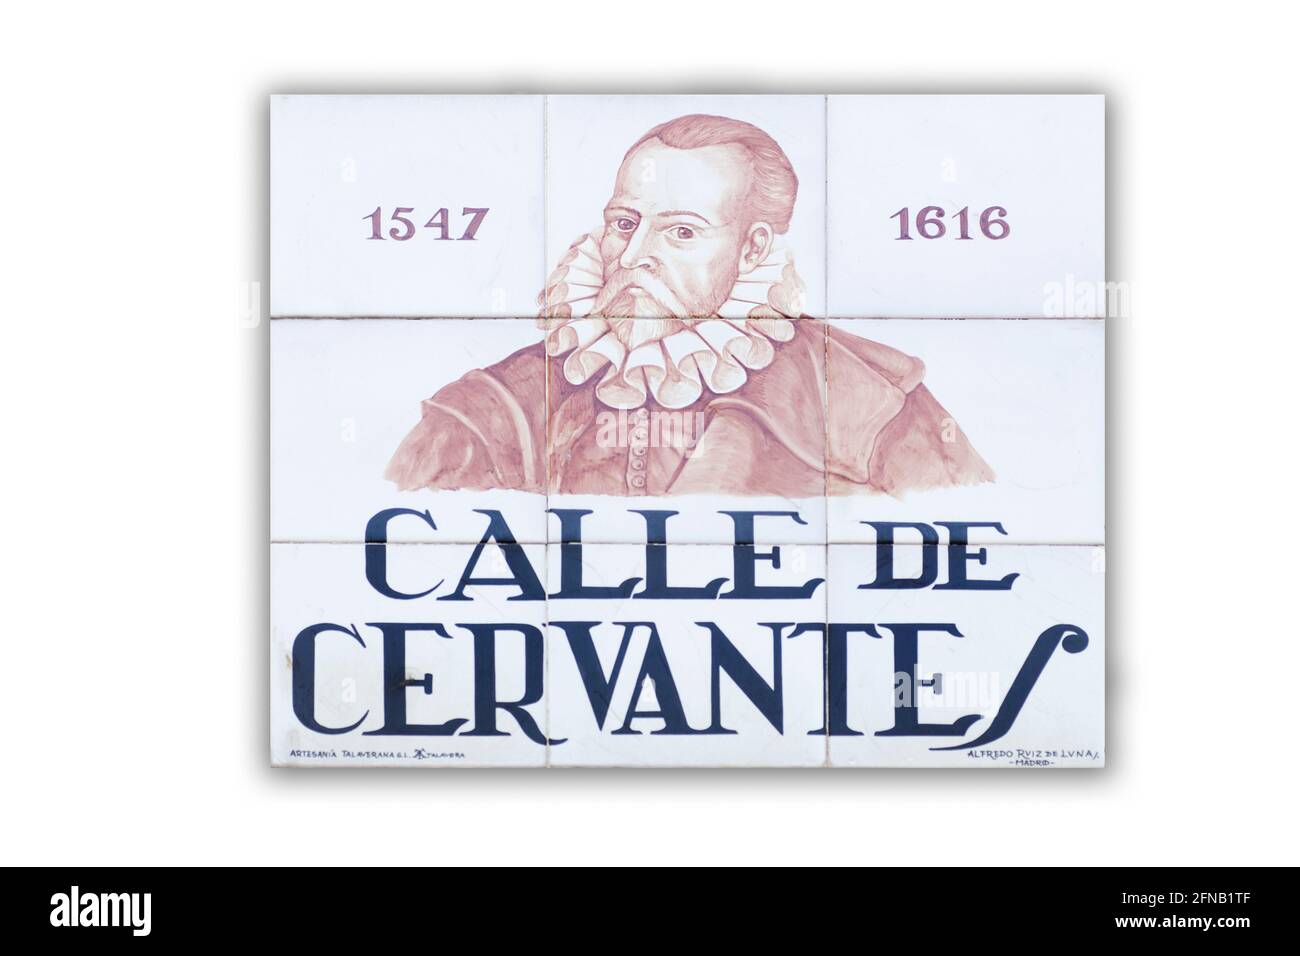 Miguel De Cervantes Saavedra Banque d'image et photos - Alamy